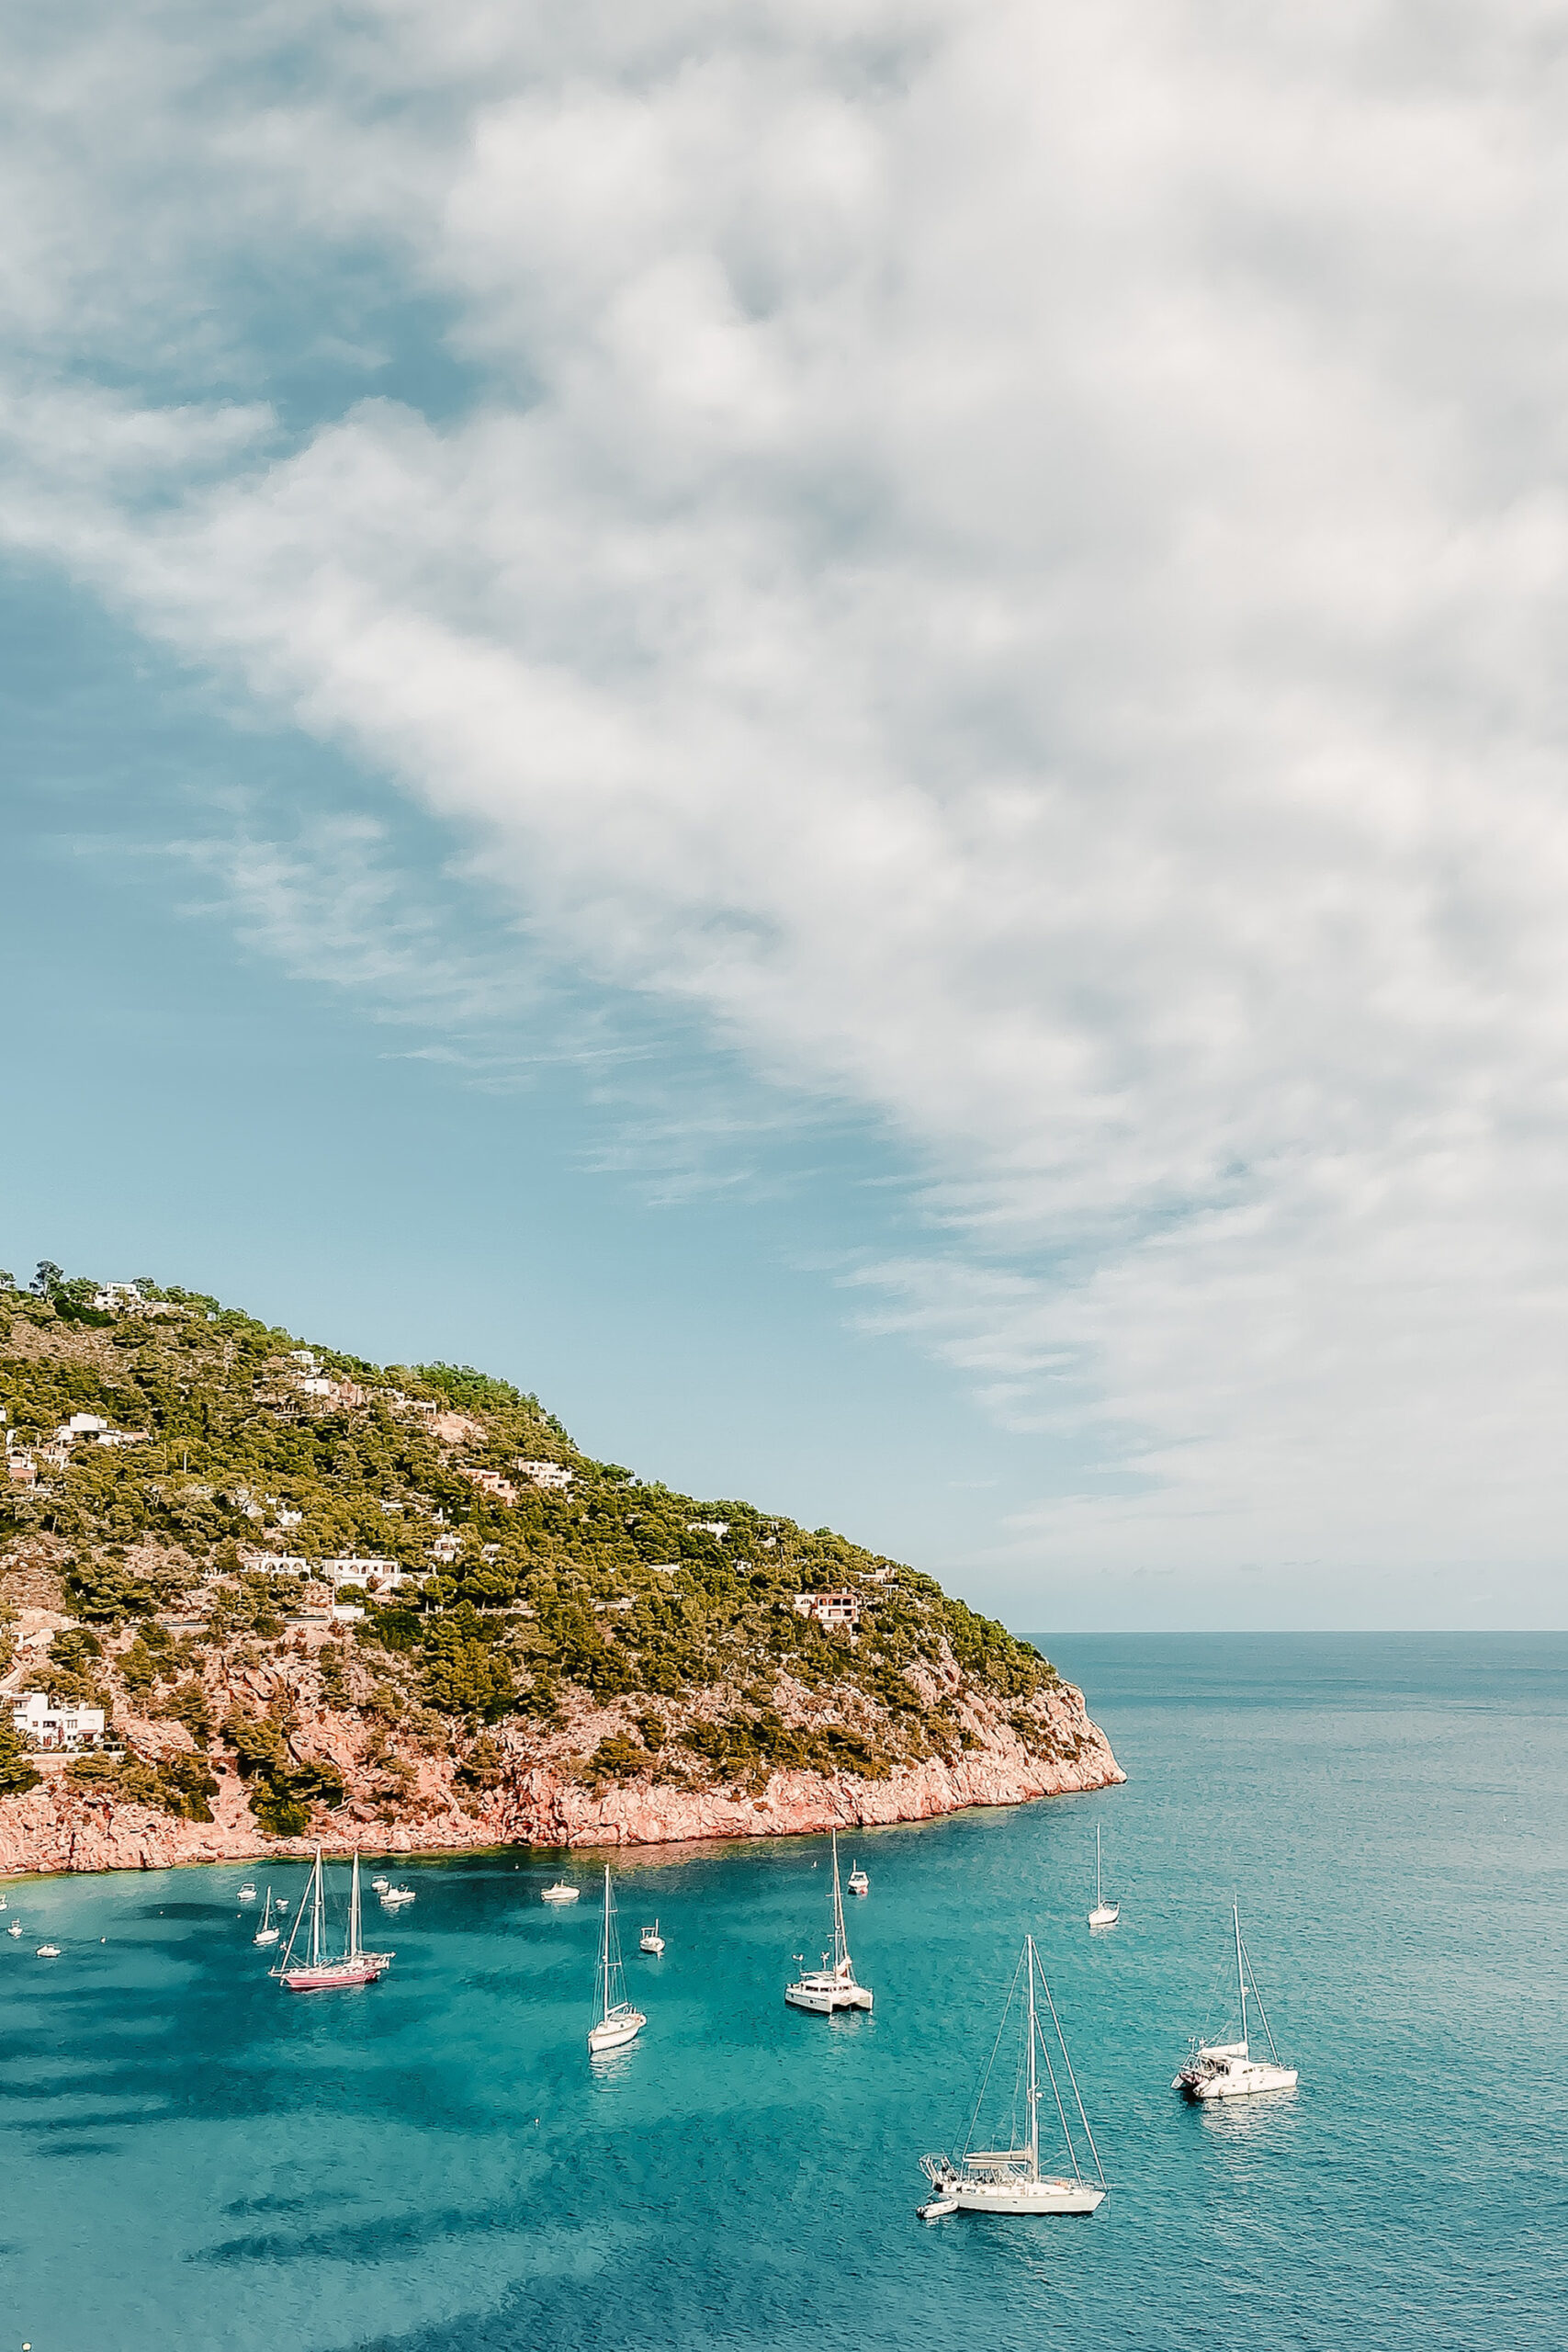 Views of Ibiza